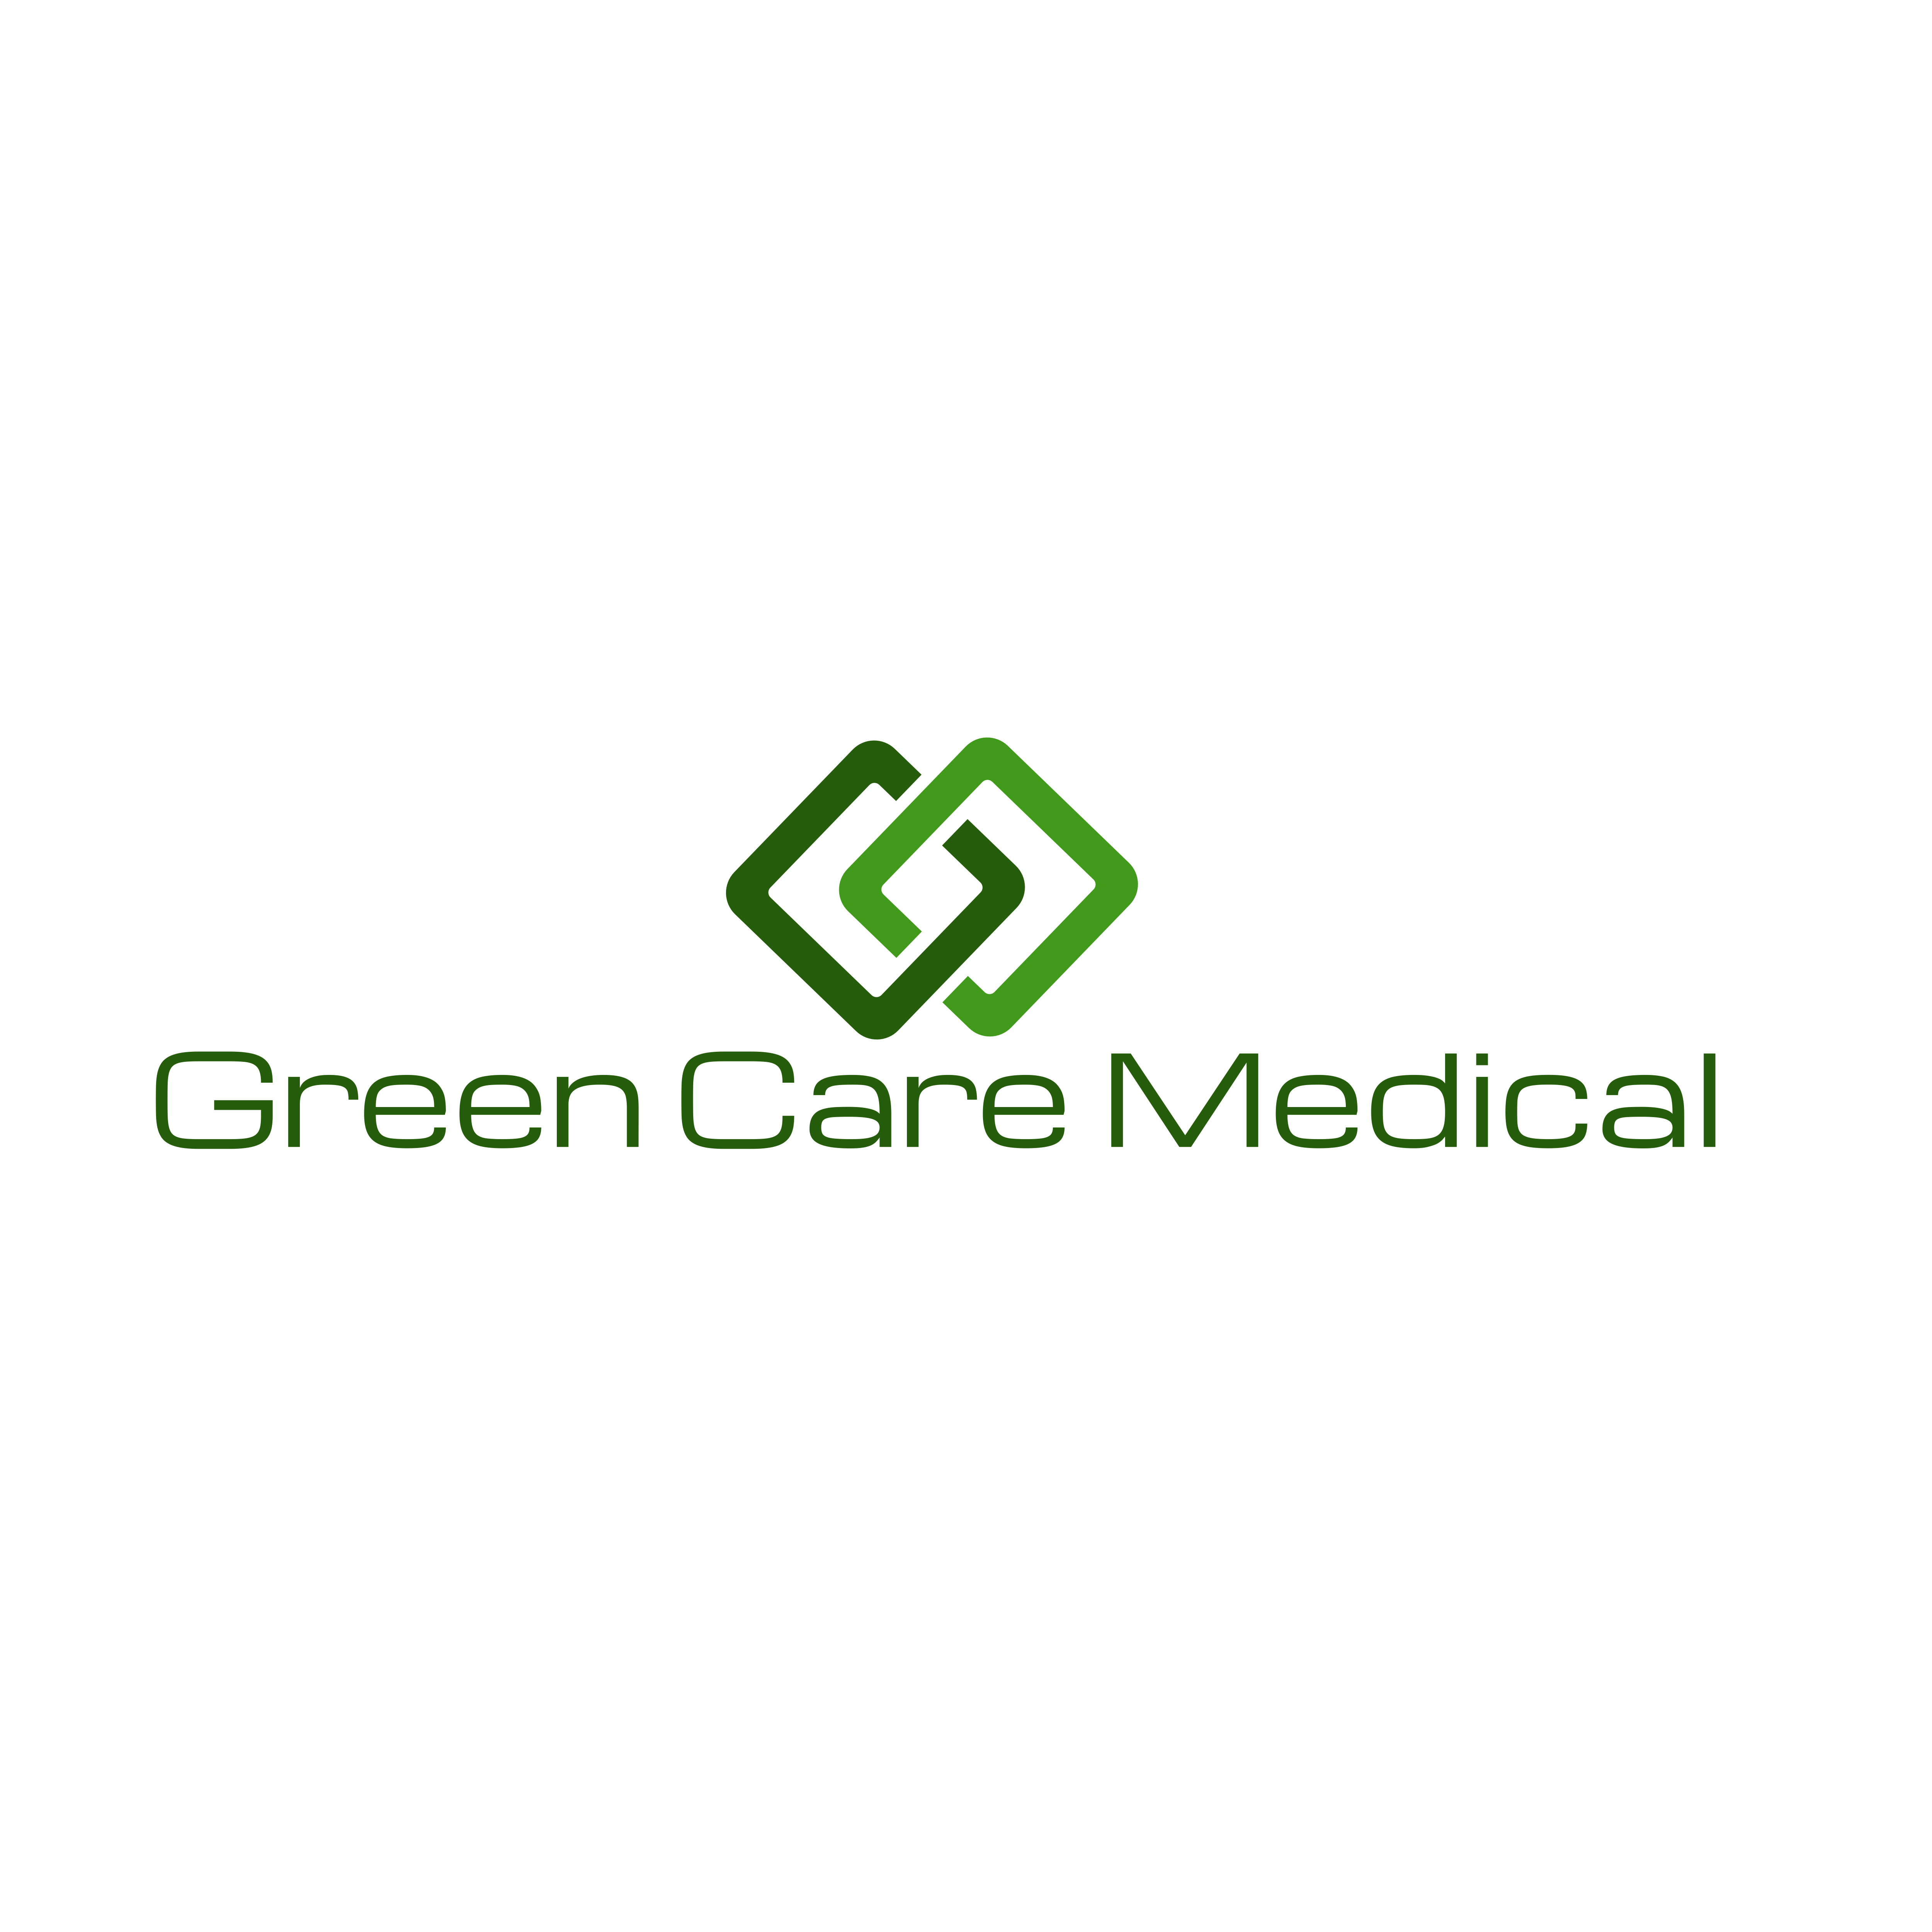 Green Care Medical - Medical Marijuana Doctors - Cannabizme.com